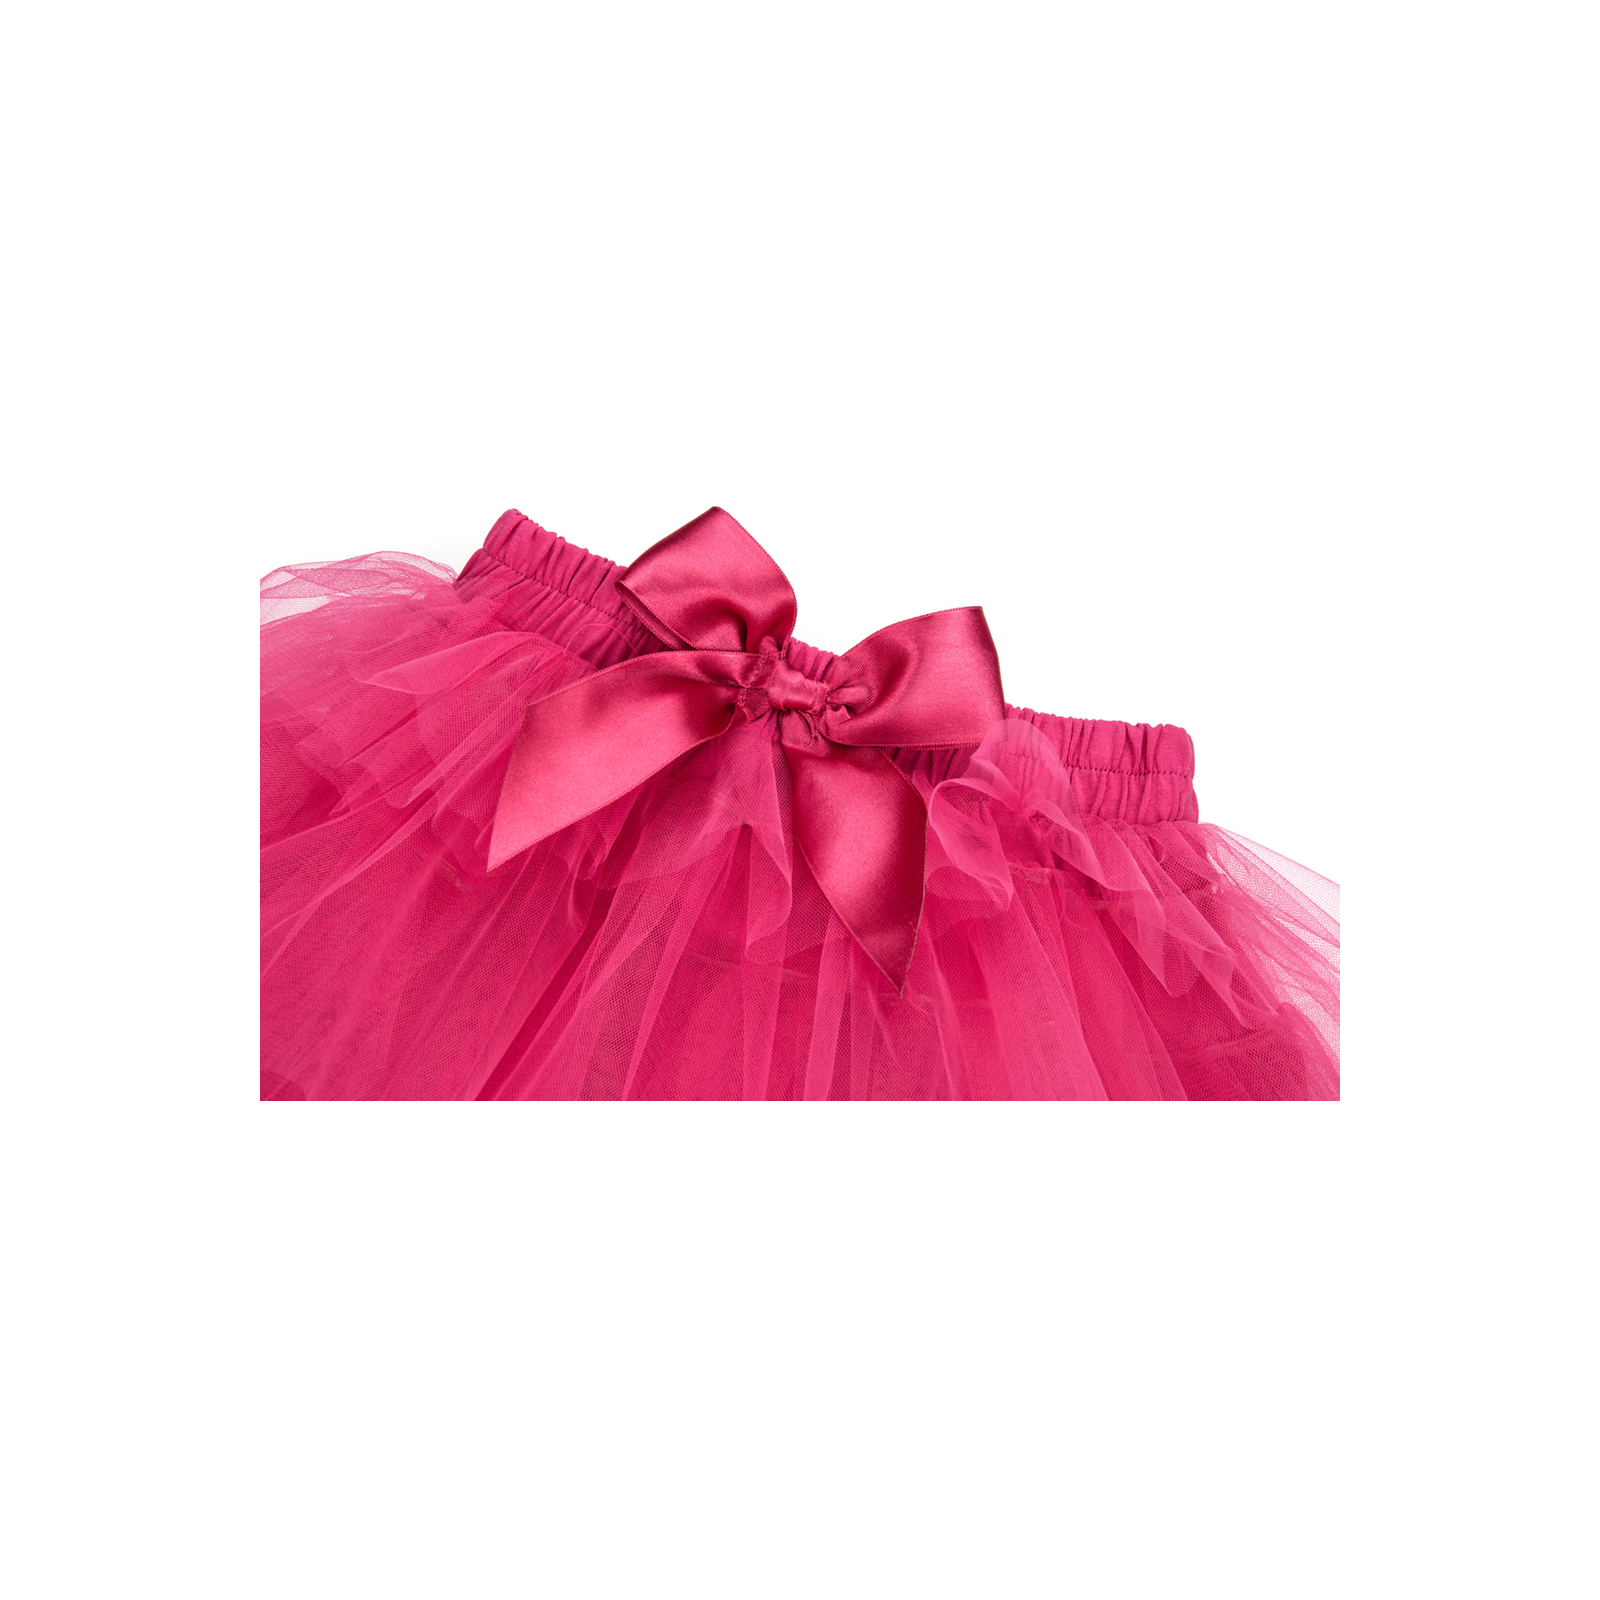 Юбка Breeze фатиновая многослойная (5338-98G-pink) изображение 2